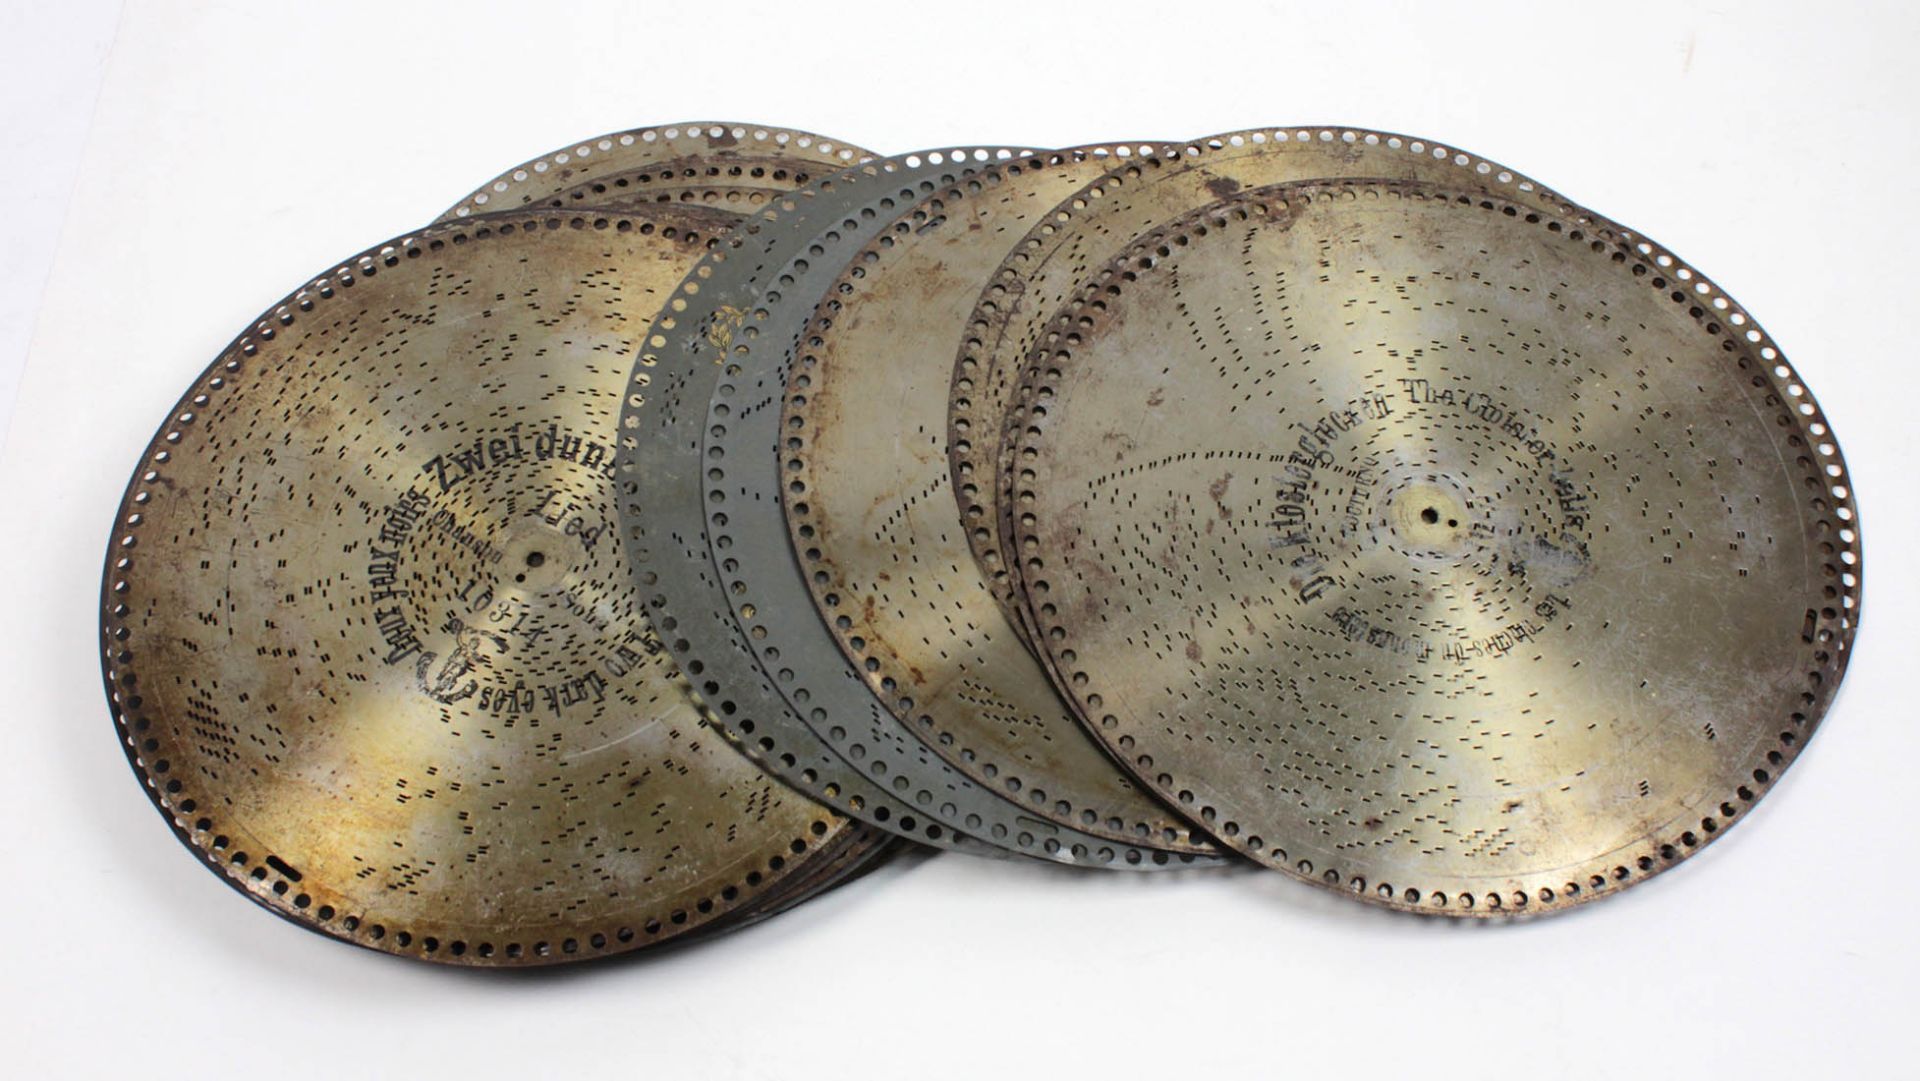 Polyphon mit 25 Platten um 1900 - Bild 8 aus 8